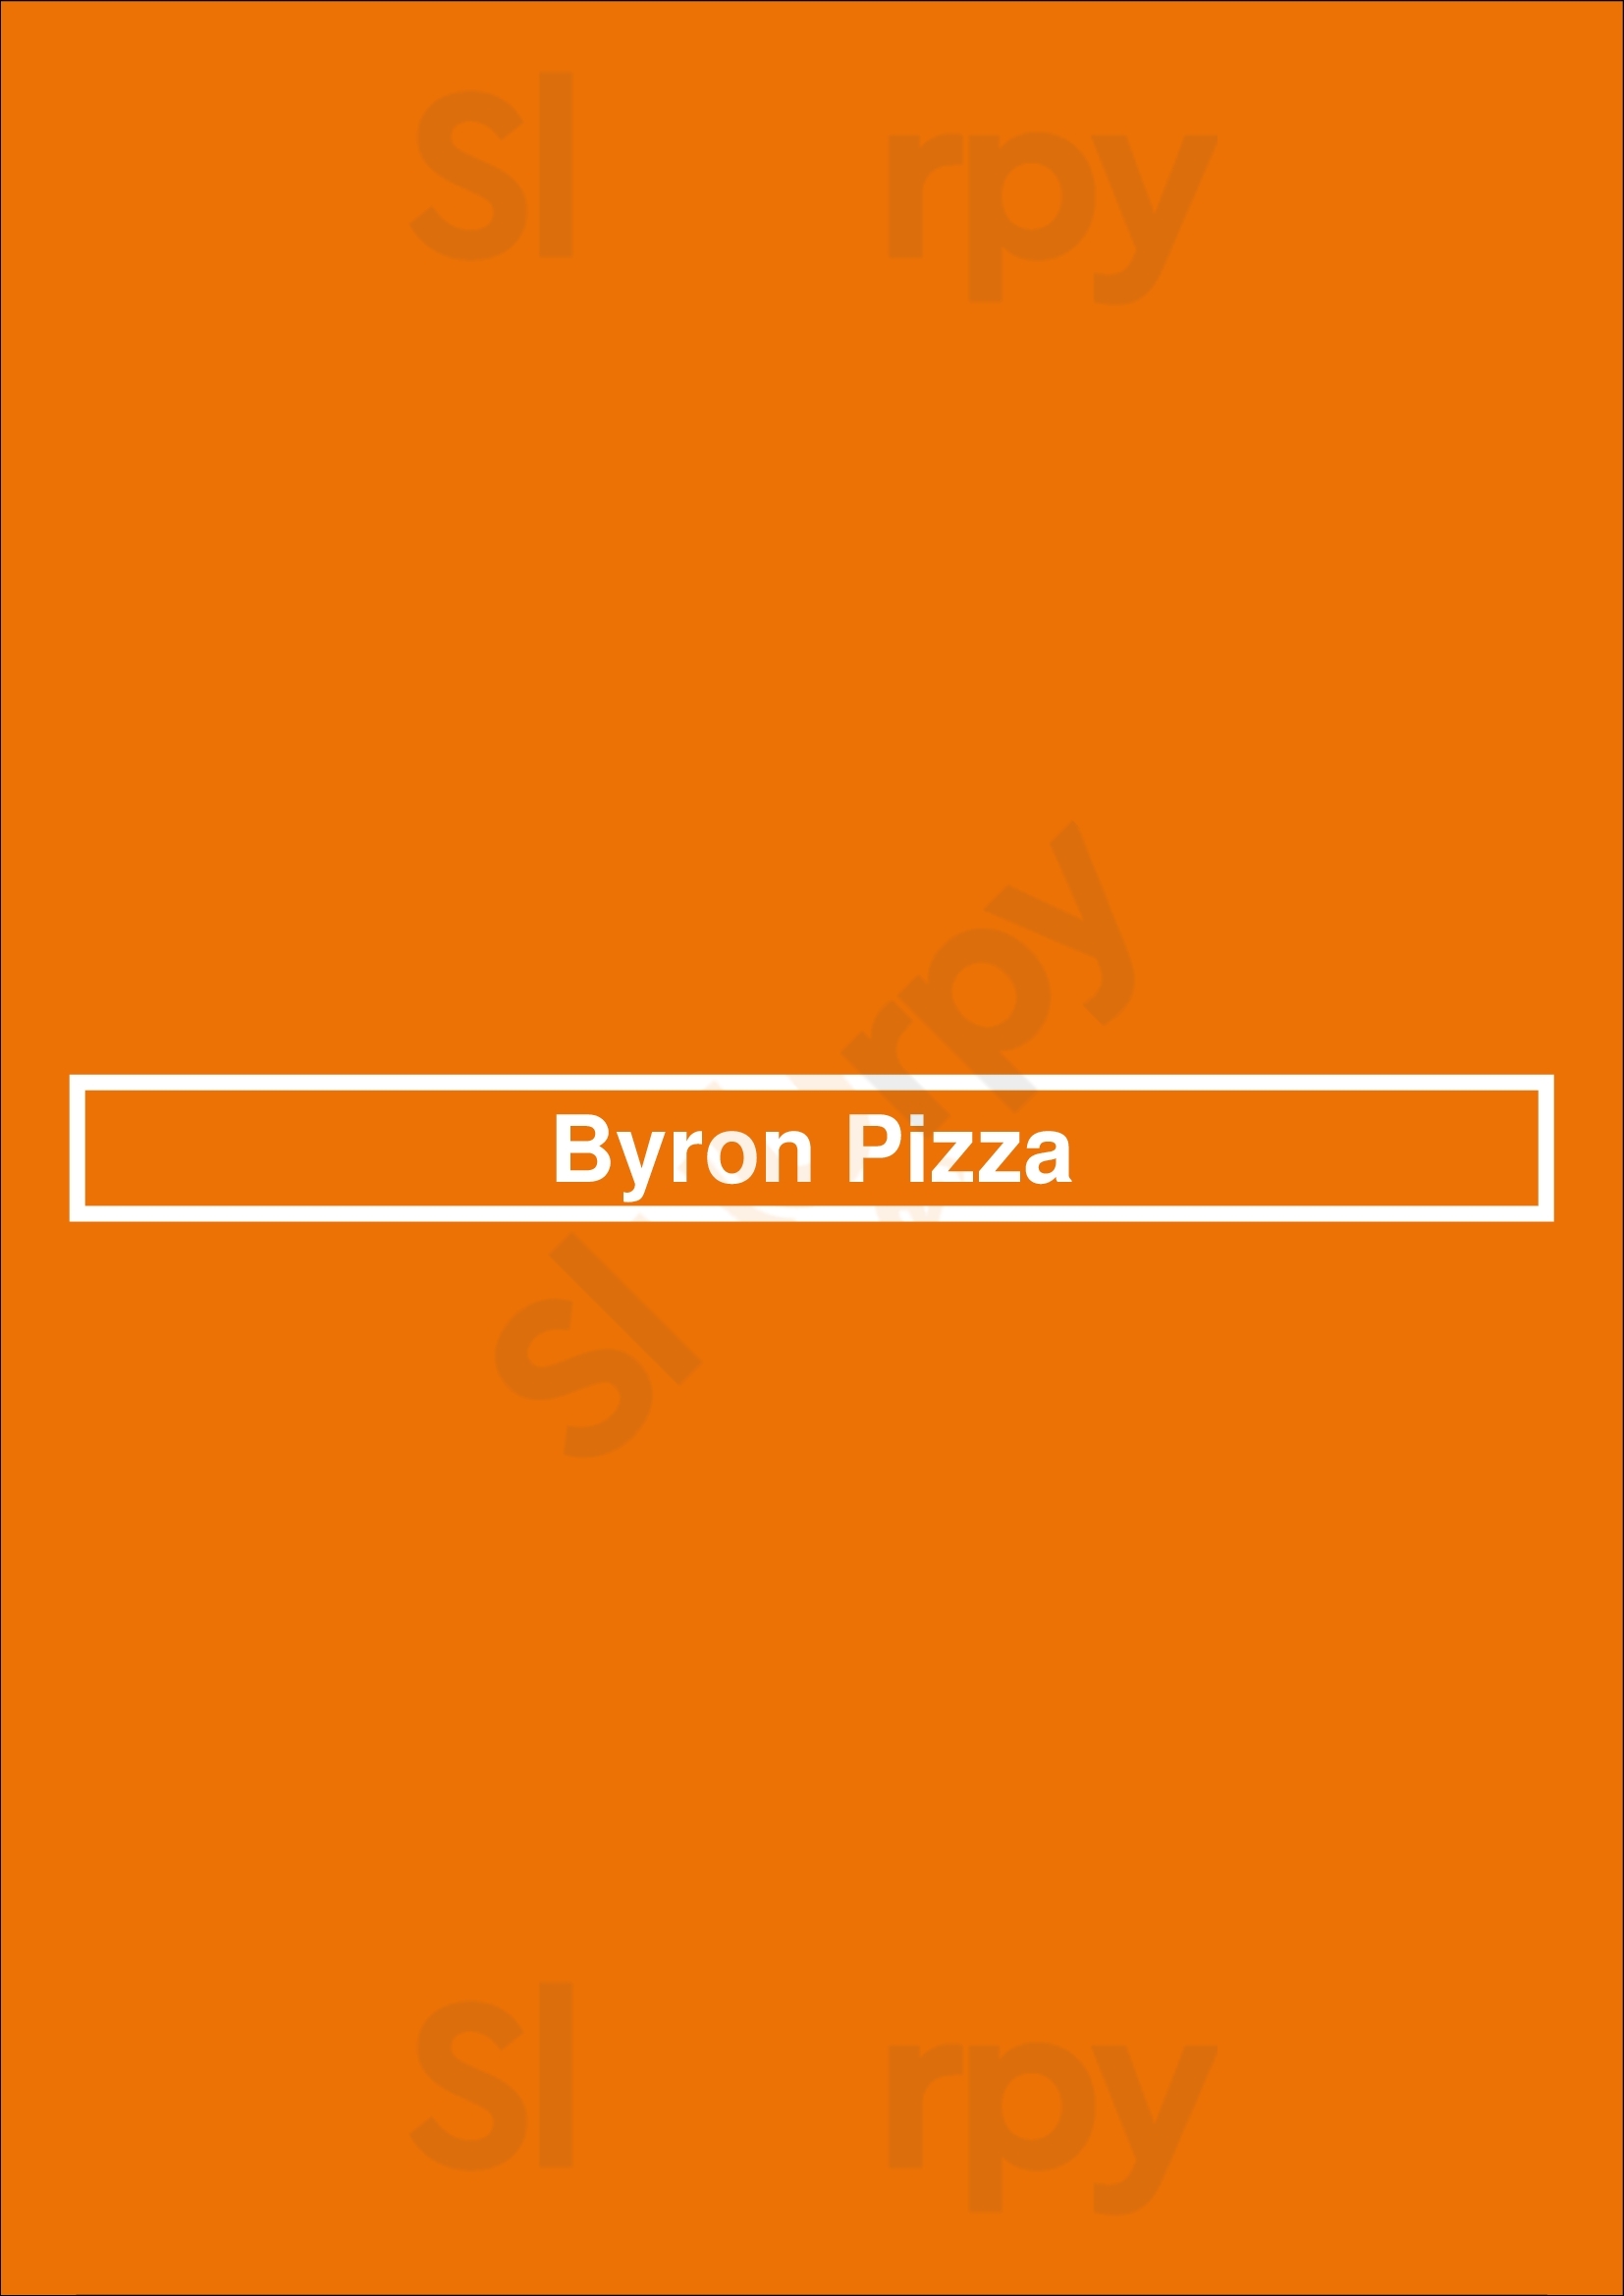 Byron Pizza London Menu - 1